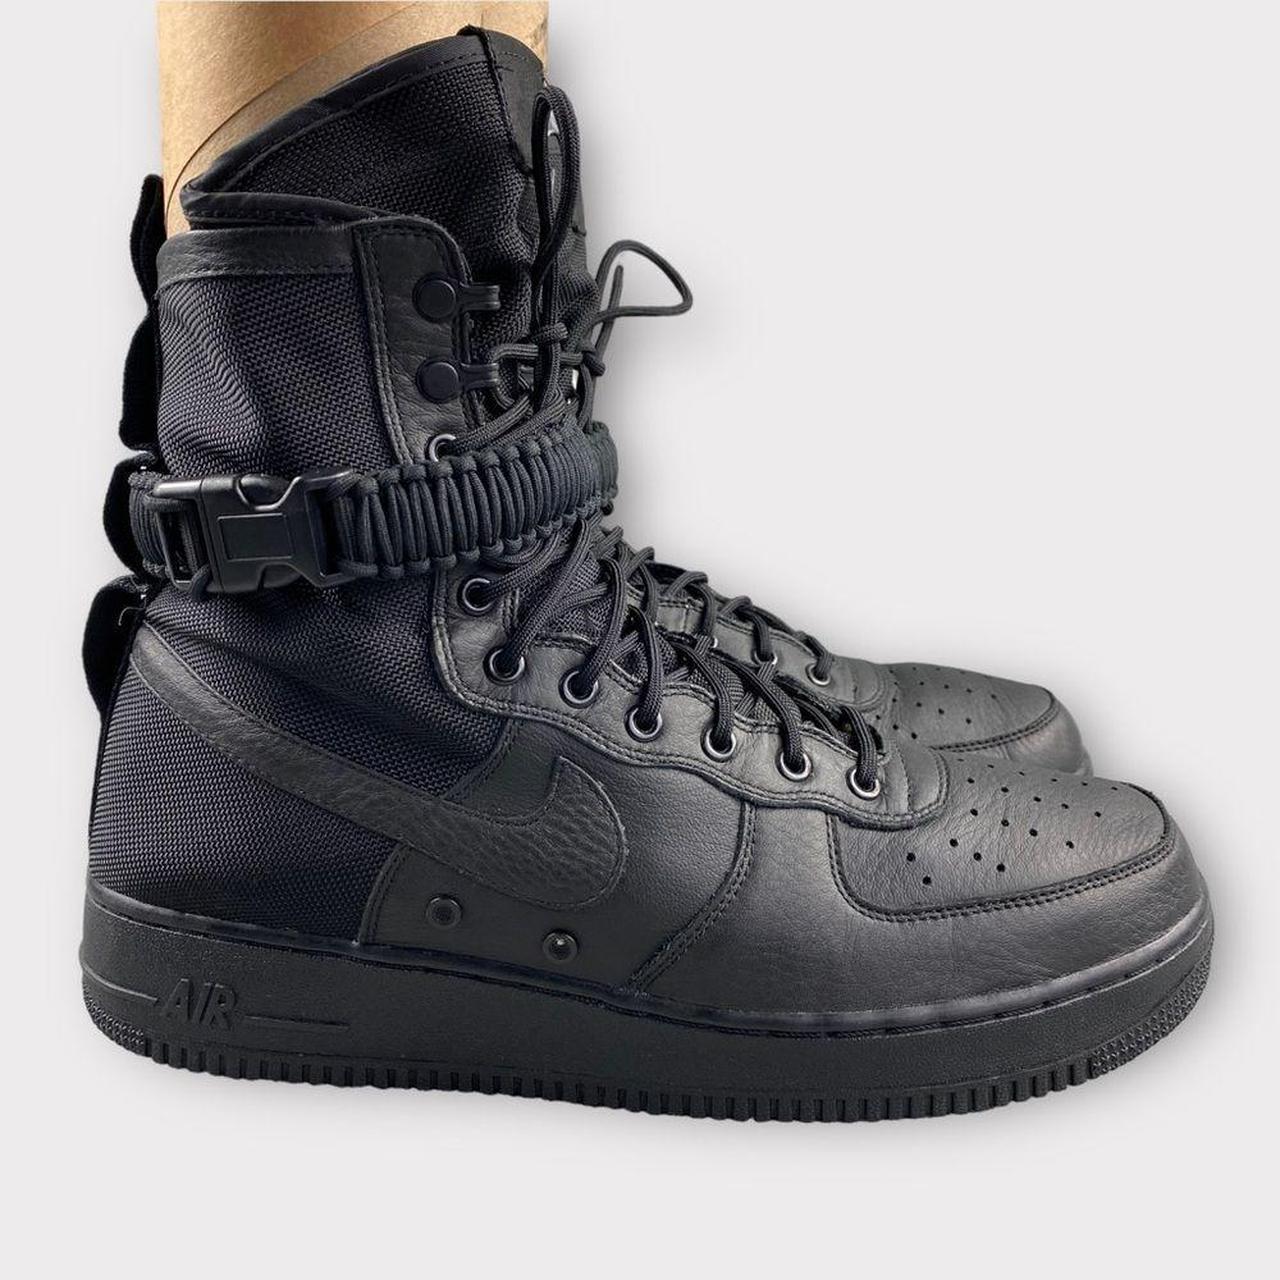 Nike Men's Air Force 1 Boot